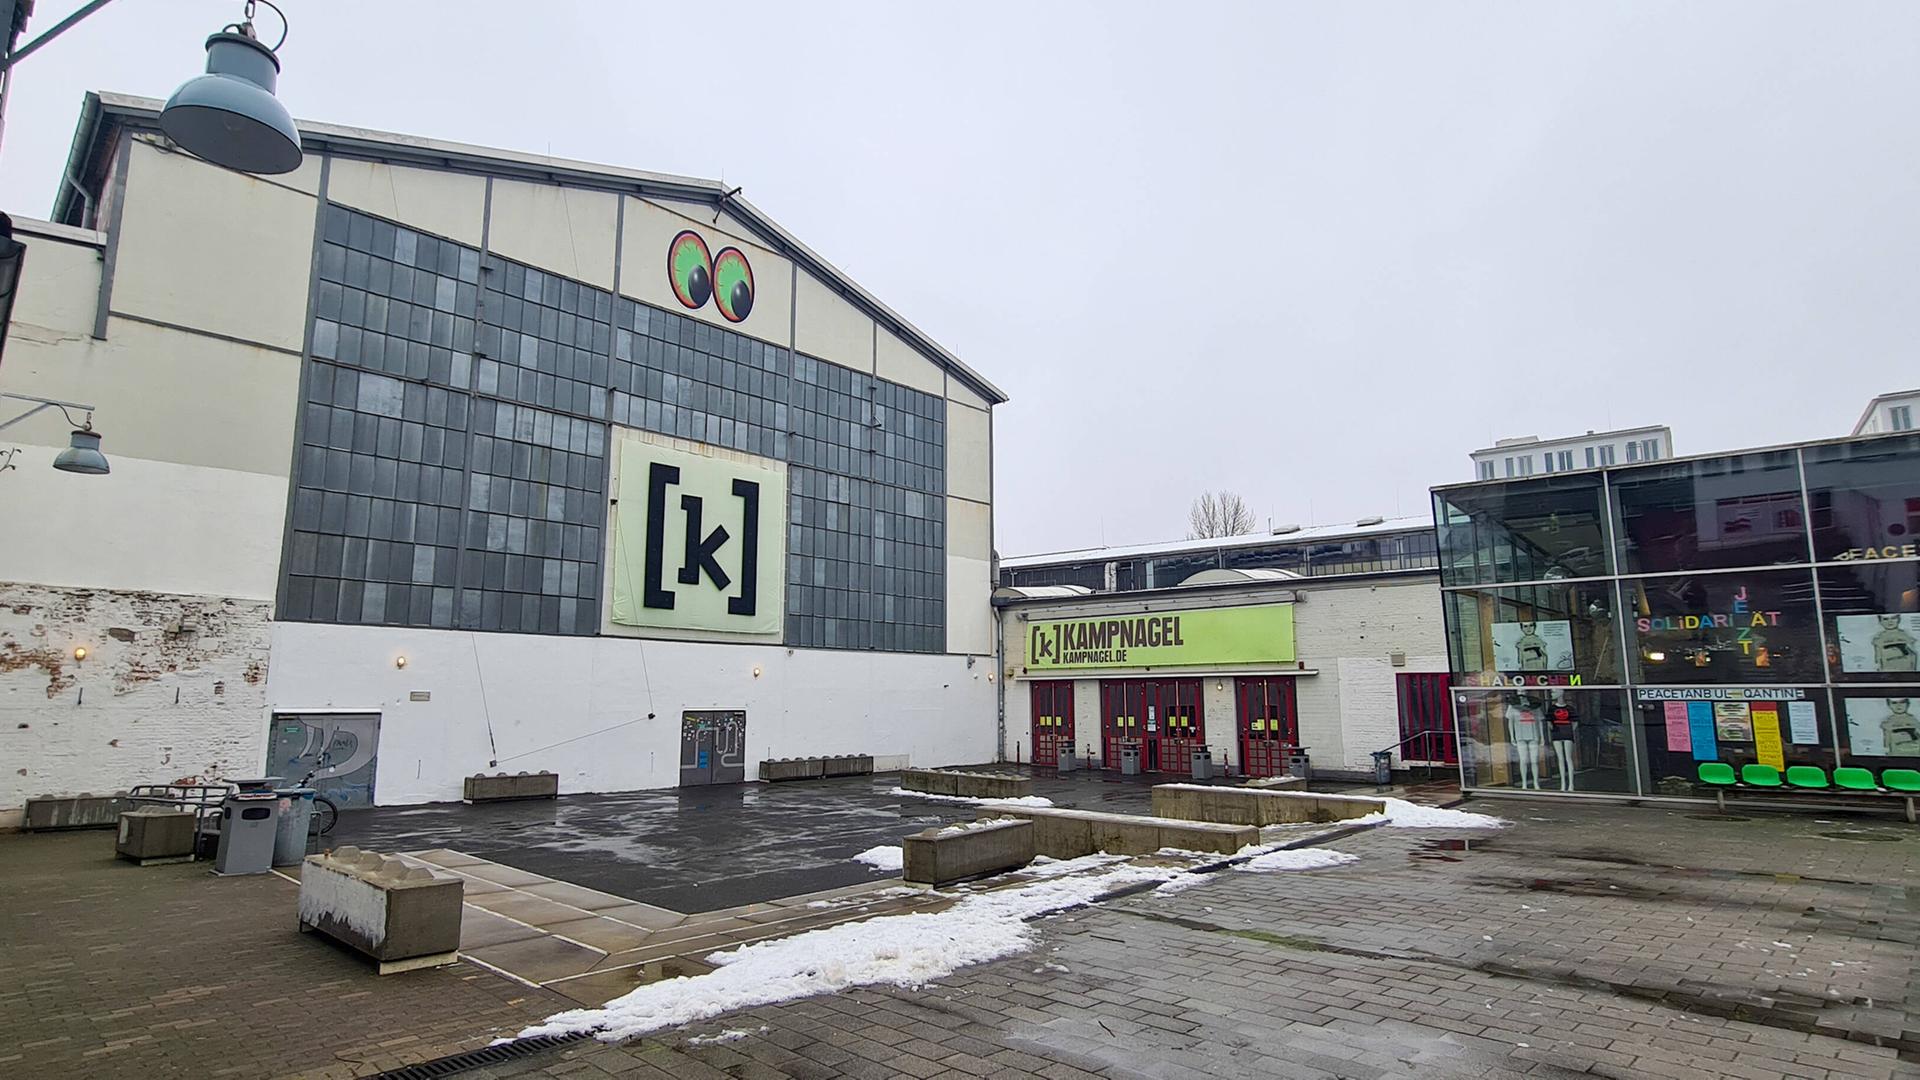 Außenaufnahme eines Fabrikgebäudes mit zwei großen grünen Augen und dem Buchstaben K an der Fassade